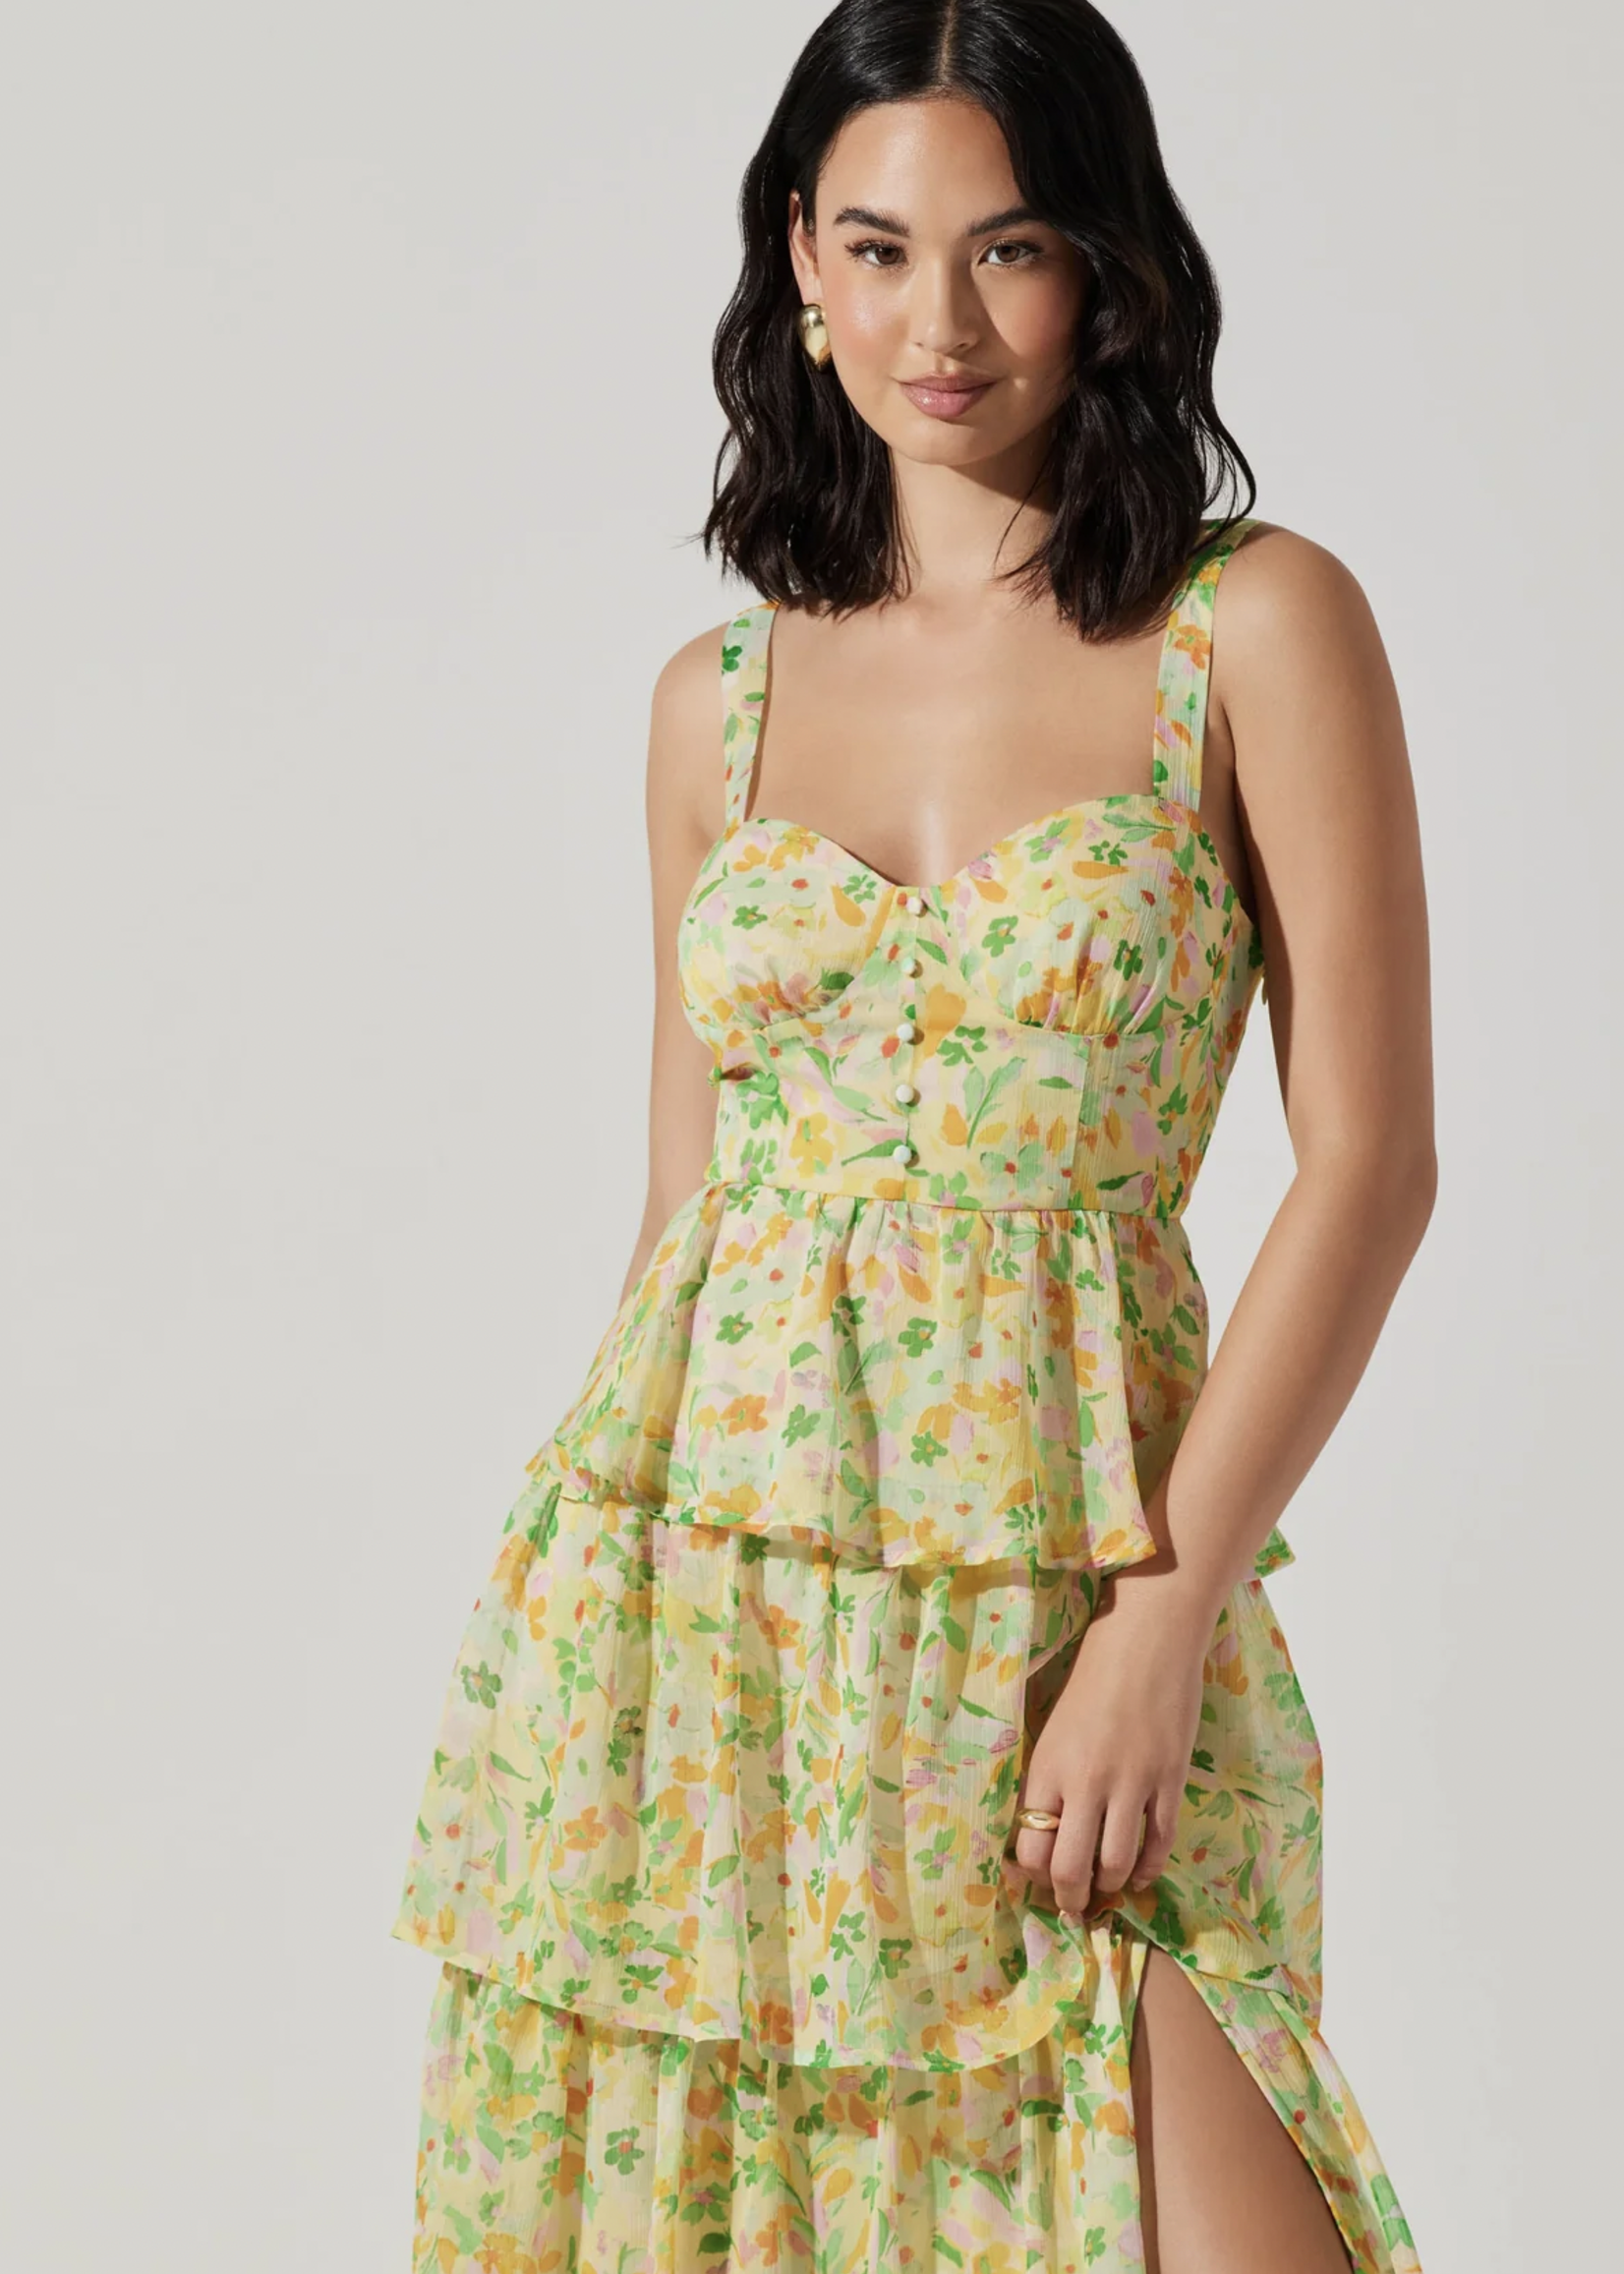 Elitaire Boutique Midsummer Dress